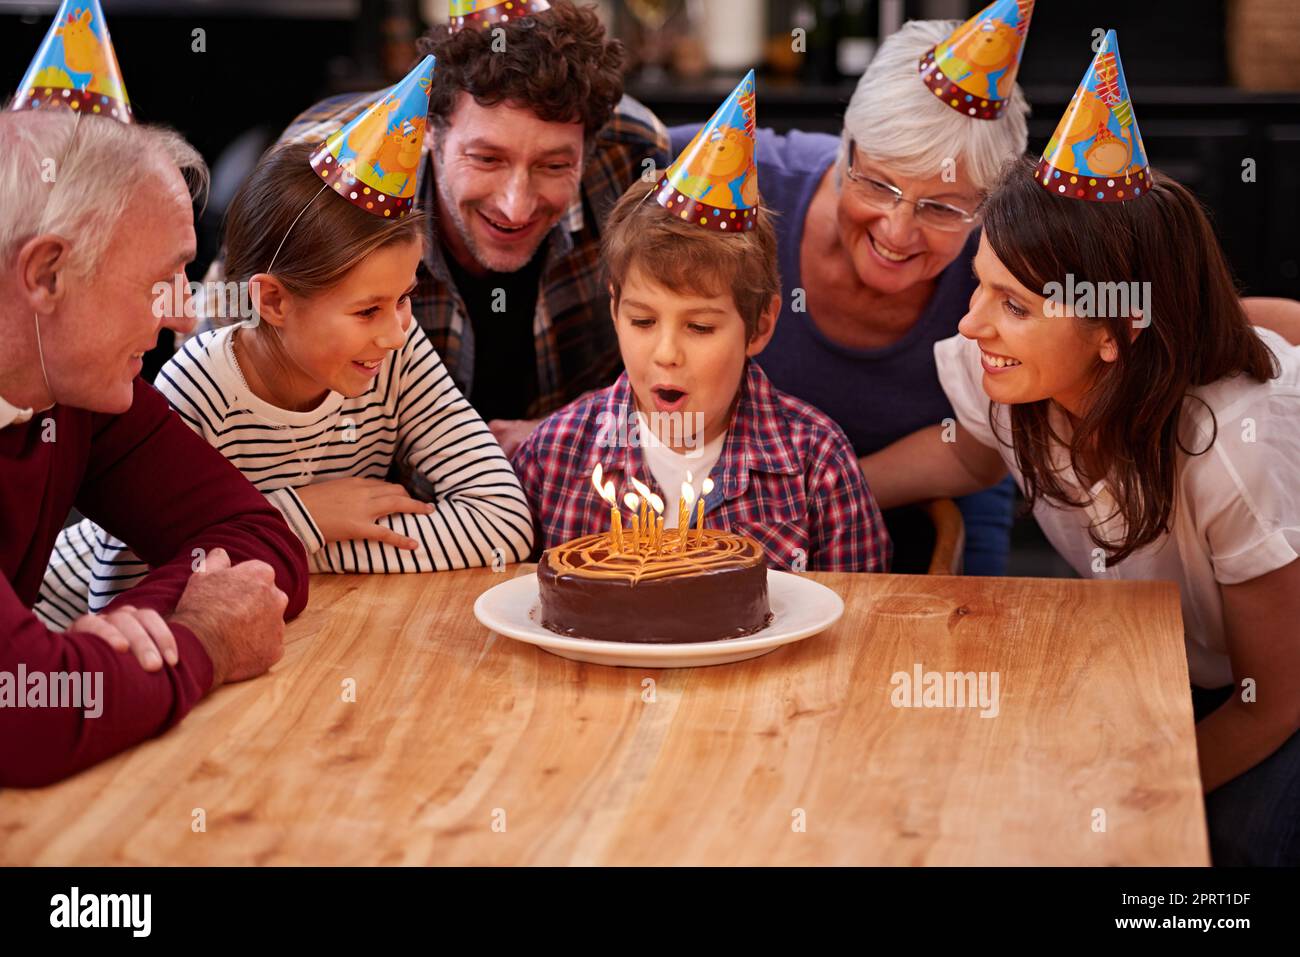 Ich kann sie sofort ausblasen. Ein glücklicher kleiner Junge, der seinen Geburtstag mit seiner Familie feiert. Stockfoto